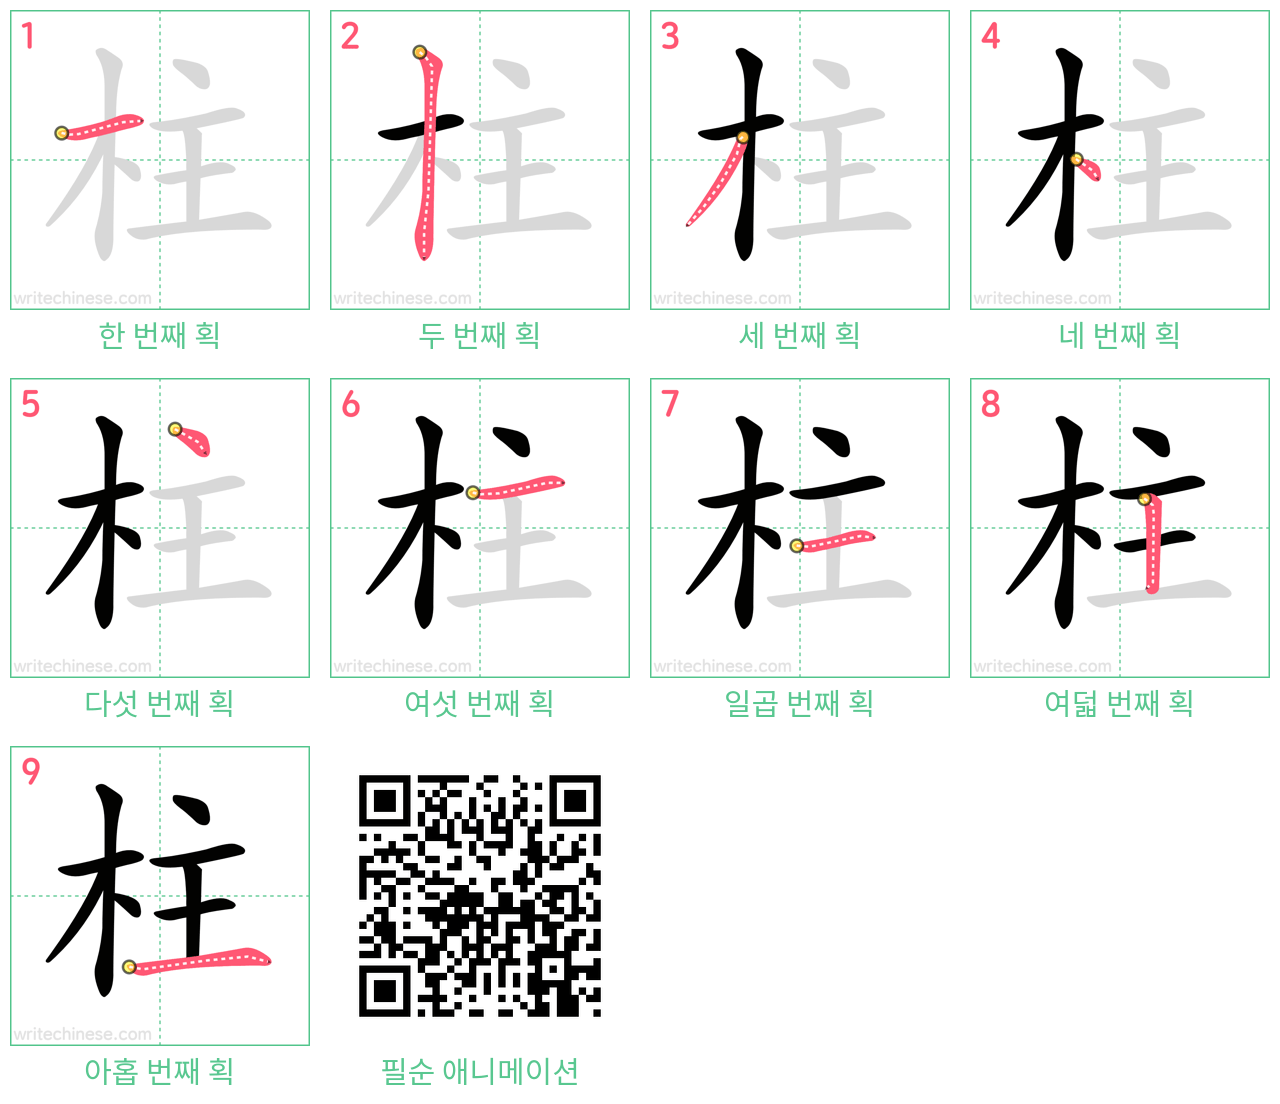 柱 step-by-step stroke order diagrams